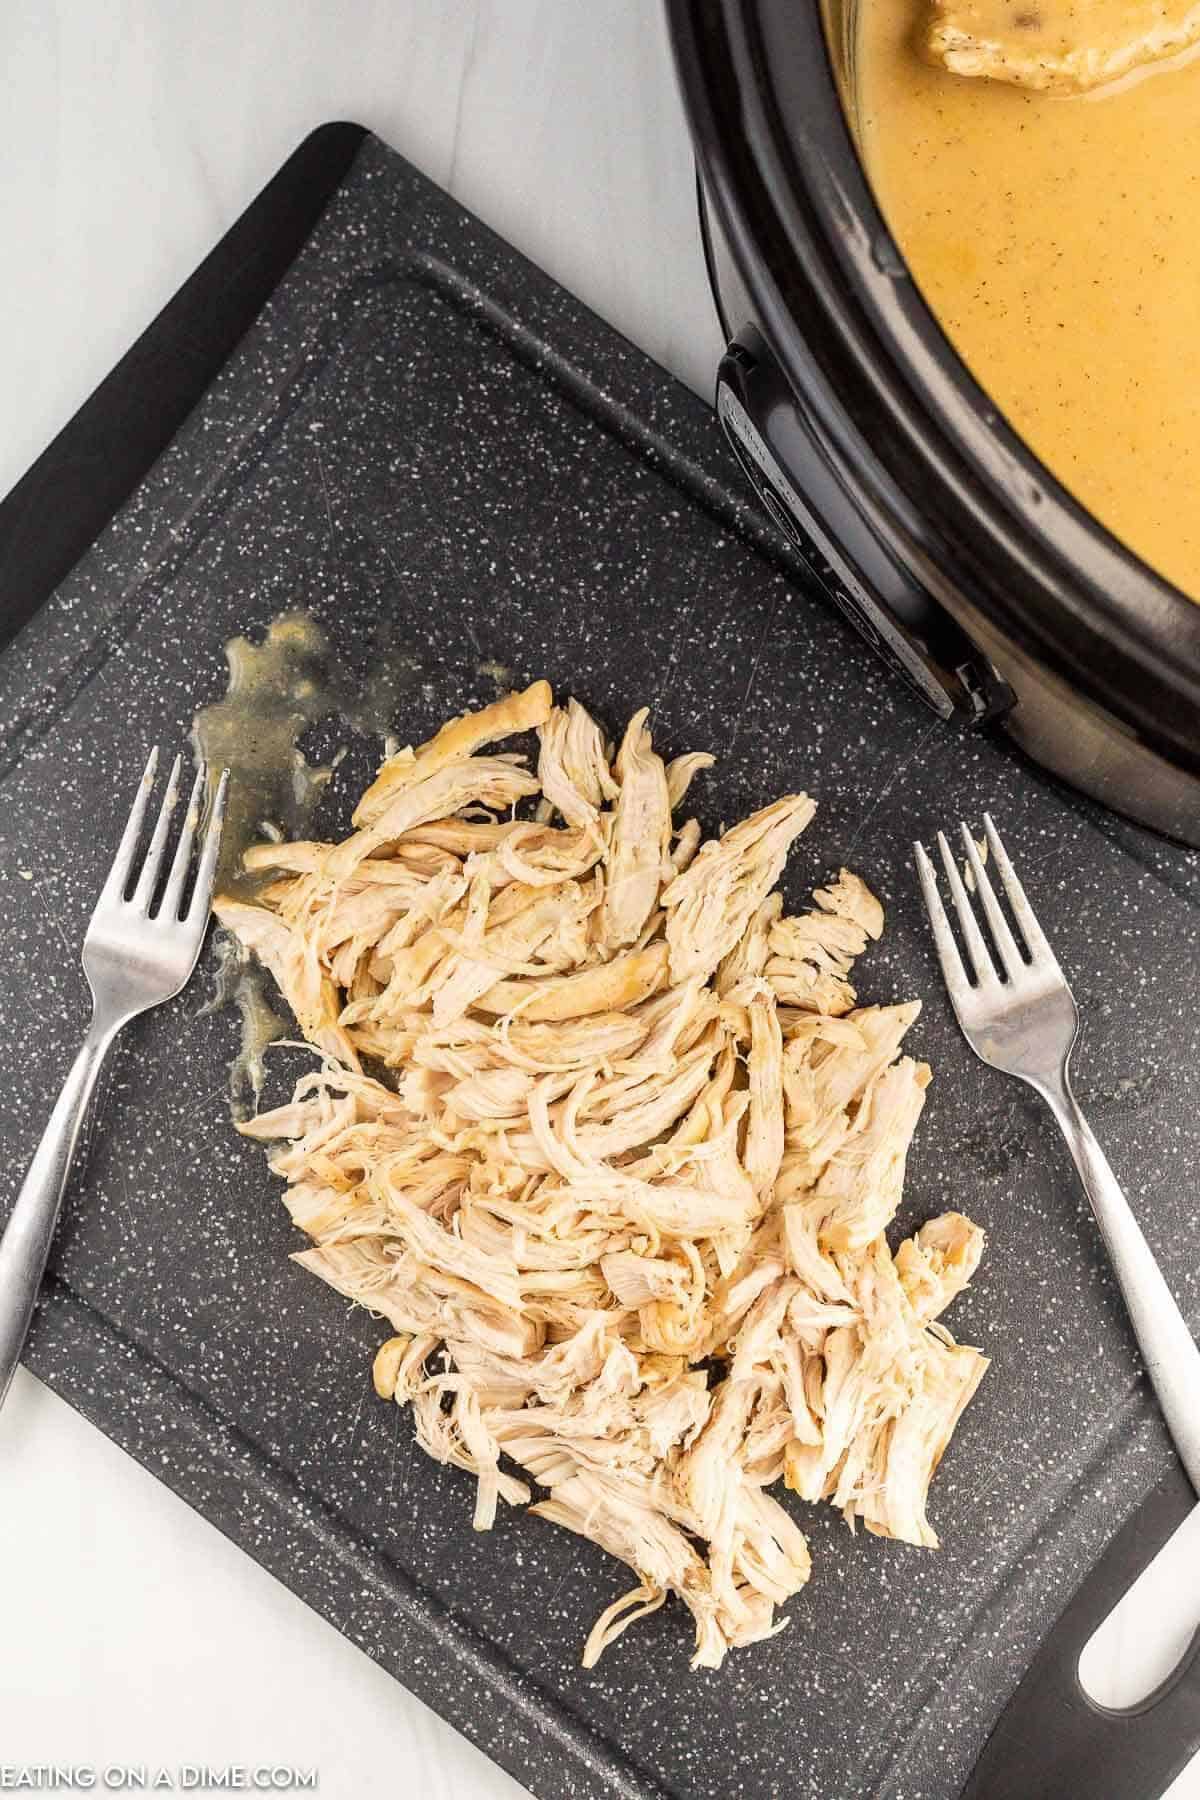 Shredded chicken on the cutting board